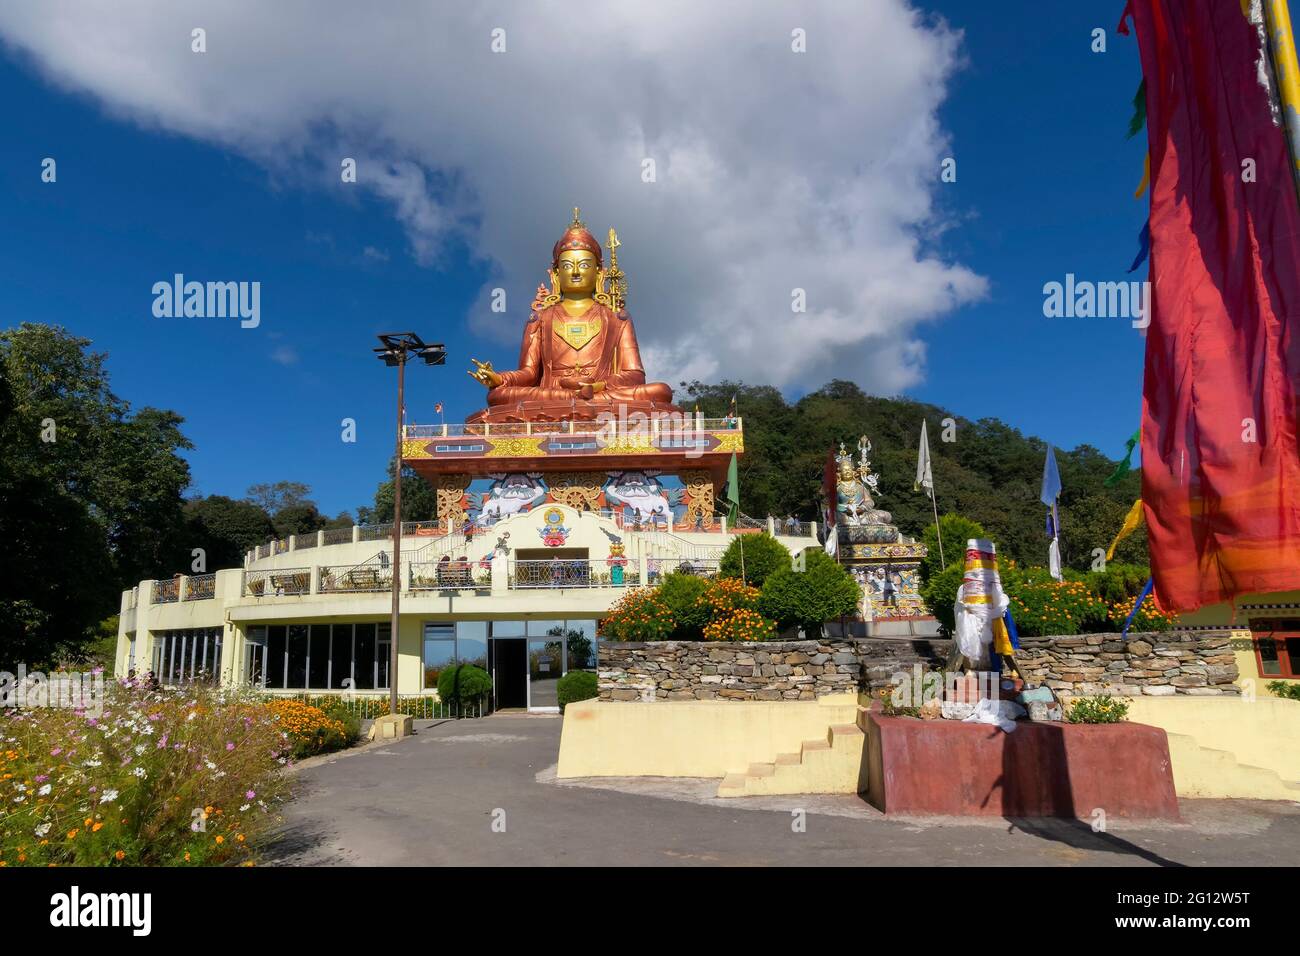 Belle statue de Samdruptse, une immense statue de mémorial bouddhiste à Sikkim, ciel bleu ciel nuageux en arrière-plan. Sikkim est un état de l'Inde, sitauted dans le gre Banque D'Images